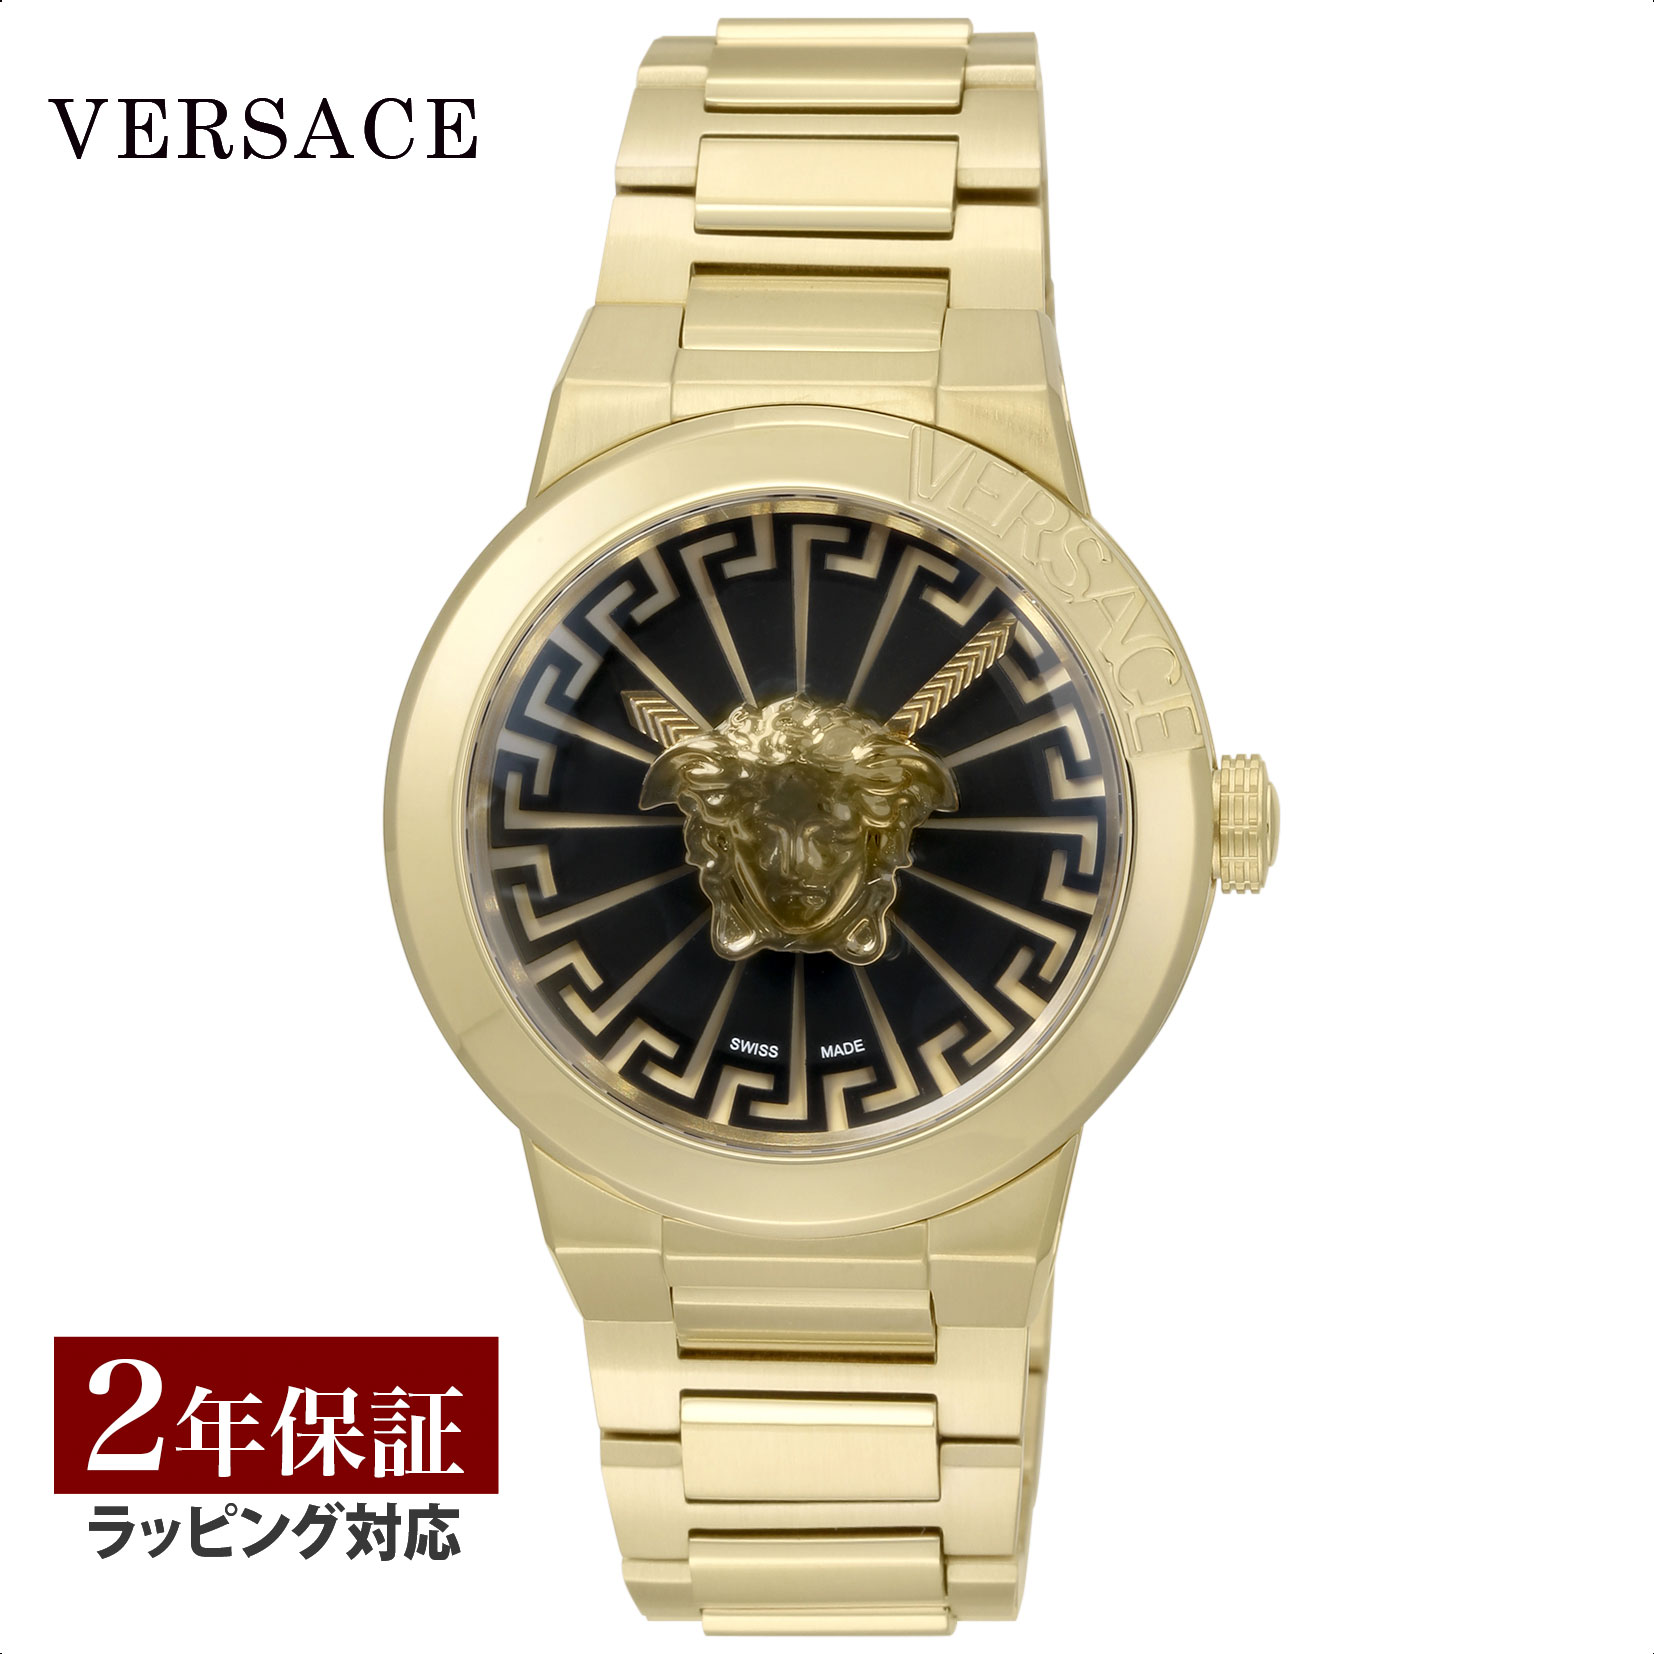 ヴェルサーチェ 腕時計（メンズ） ヴェルサーチェ VERSACE メンズ 時計 メドゥーサ インフィニット Medusa Infinite クォーツ ブラック VE3F00522 腕時計 高級腕時計 ブランド